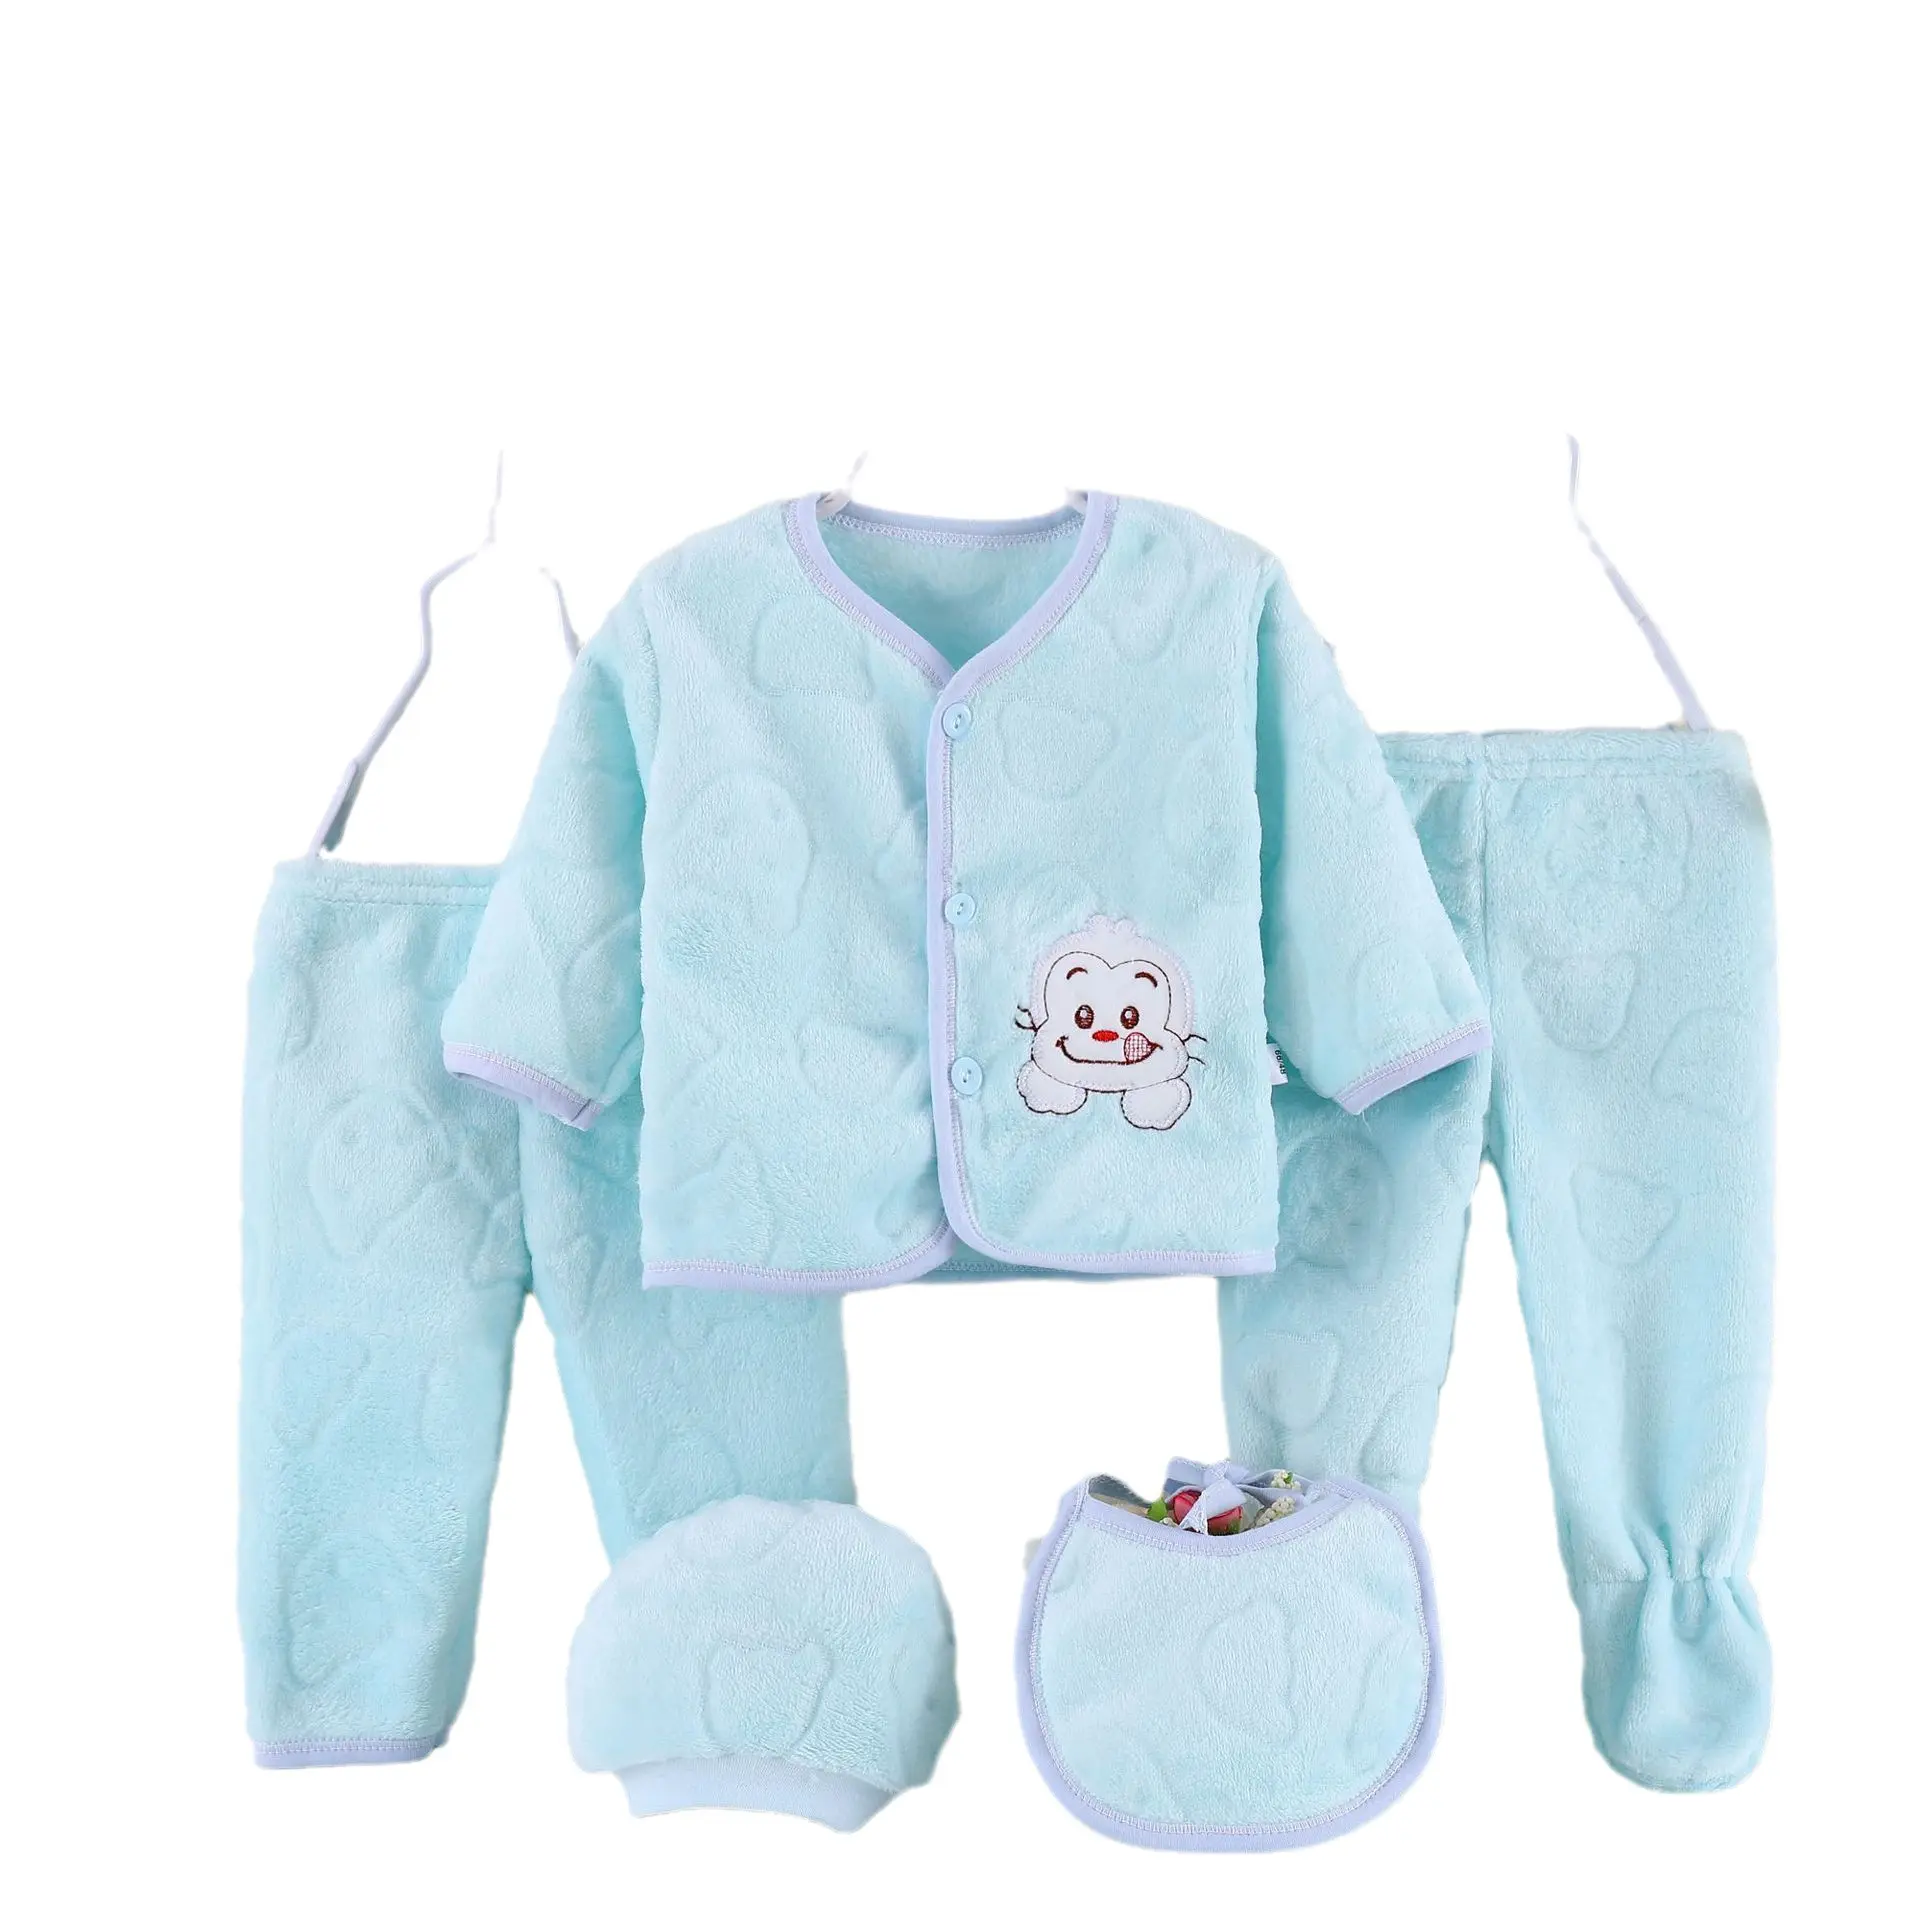 Yenidoğan bebek ürünleri 5 parça yenidoğan şartları bebek giysileri toptan kış sevimli Layette hediye seti